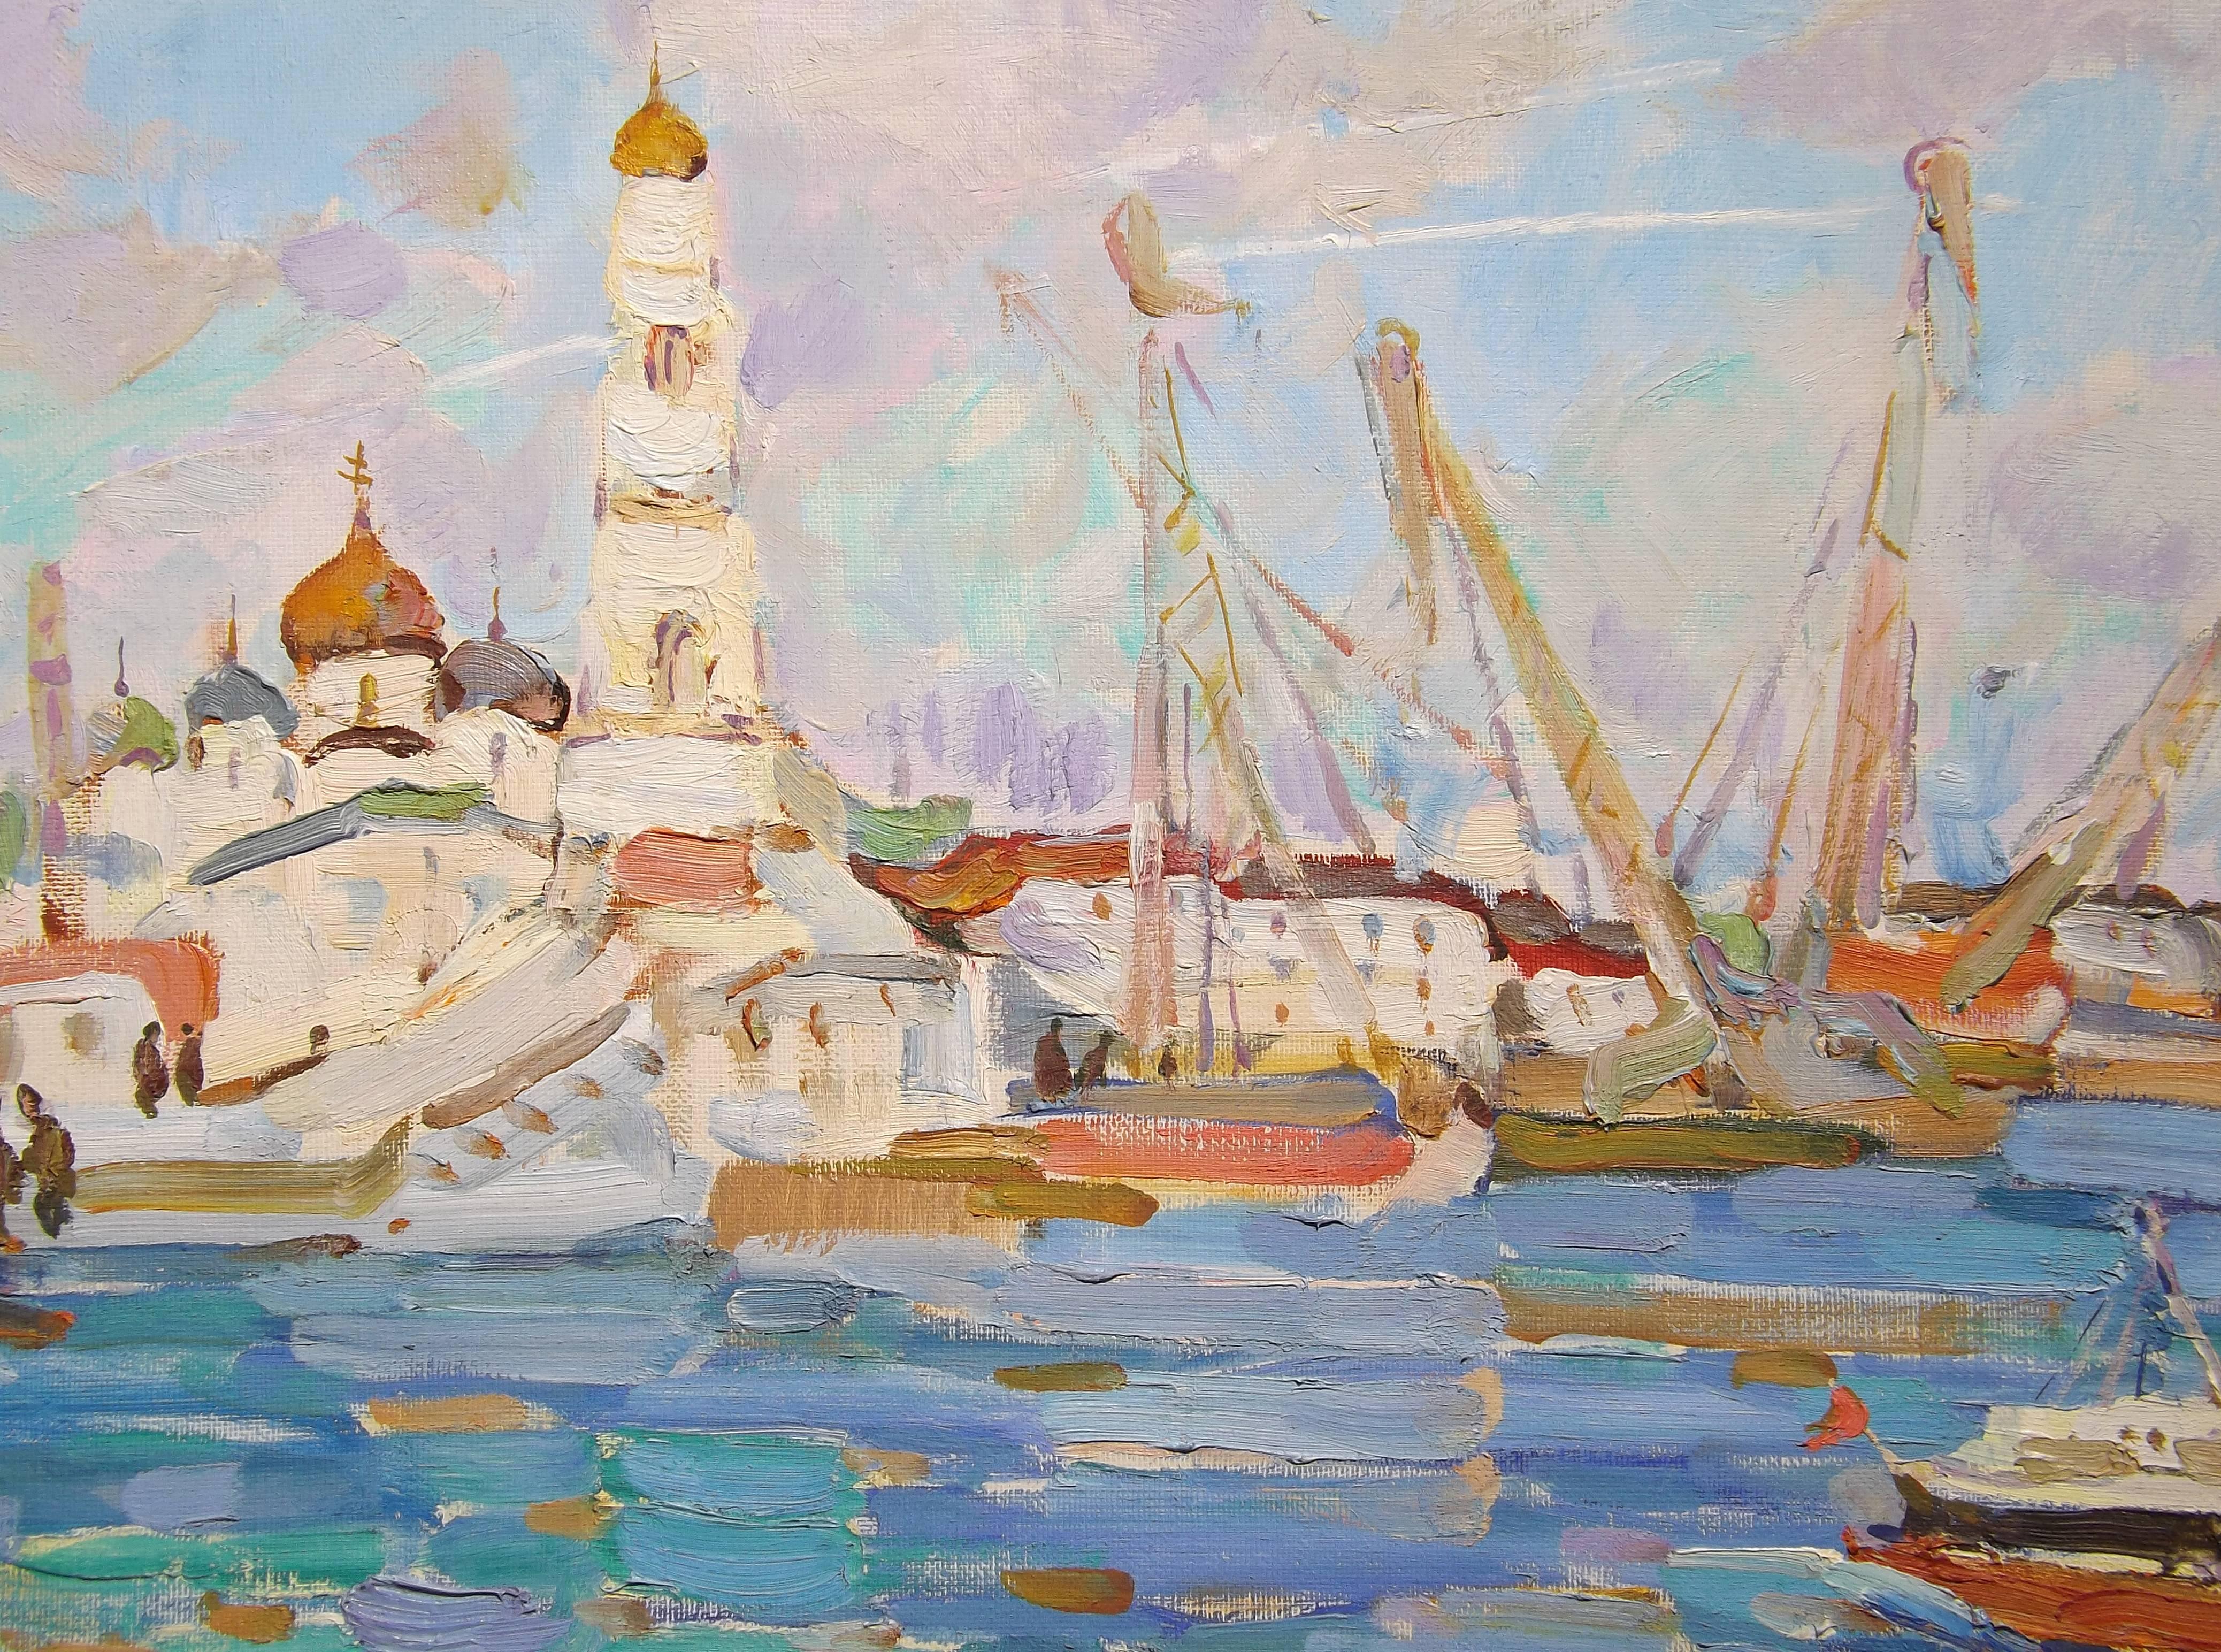 Russian 'Kineshma Harbor' Original Soviet Era Painting by Nikolai Mokrov, Dated 1989